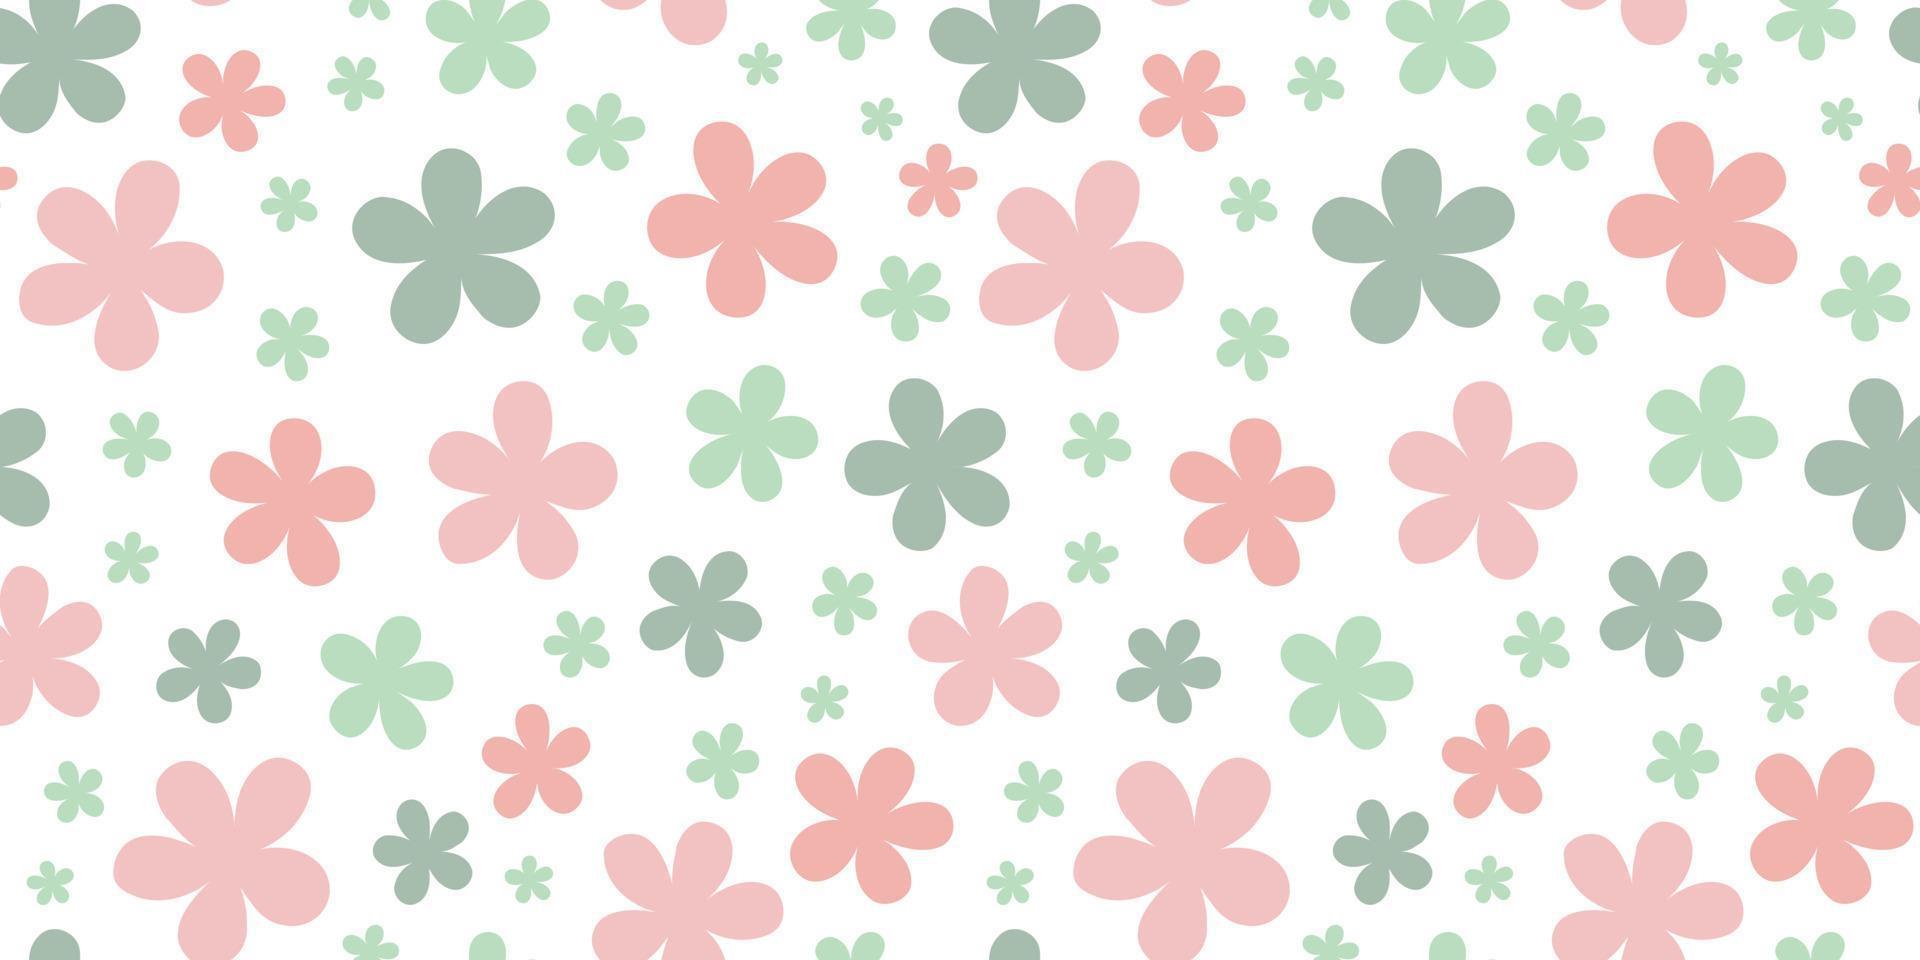 Spring background, floral pattern design with pastel flower doodles vector